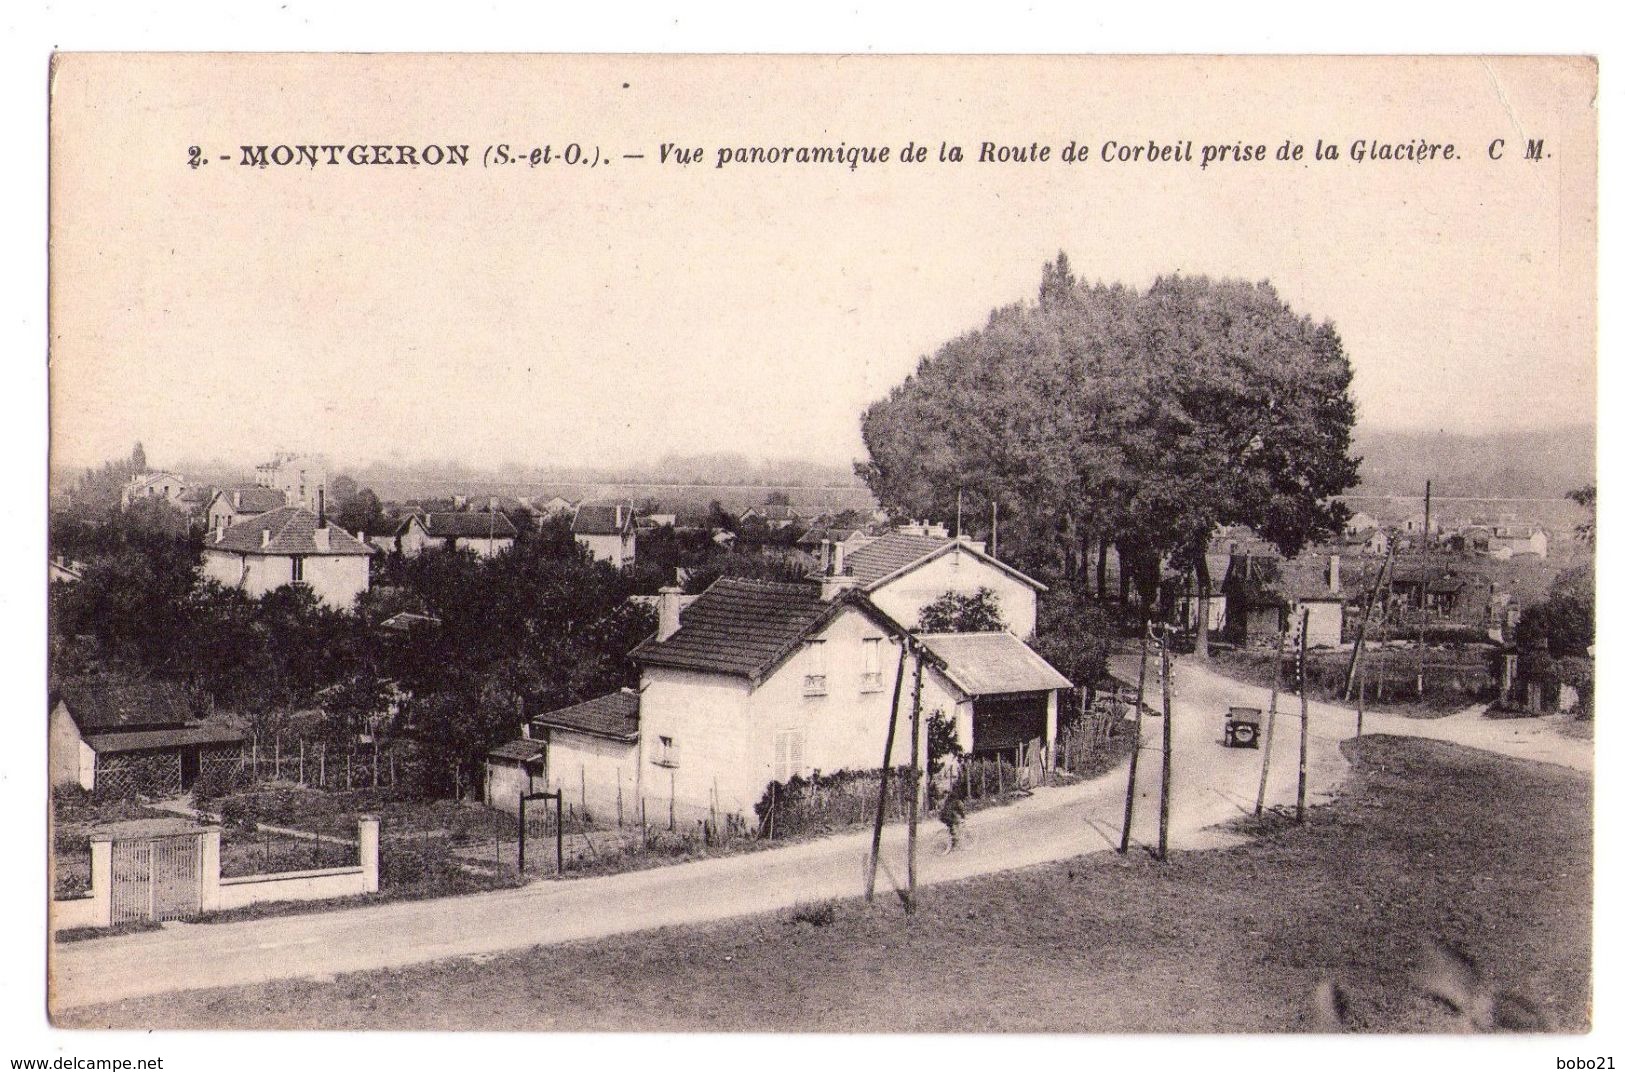 D064 - Montgeron S&²O - Vue Panoramique De La Ville De Corbeil Prise De La Glacière - C.M - édit. Cosson - N02 - Montgeron